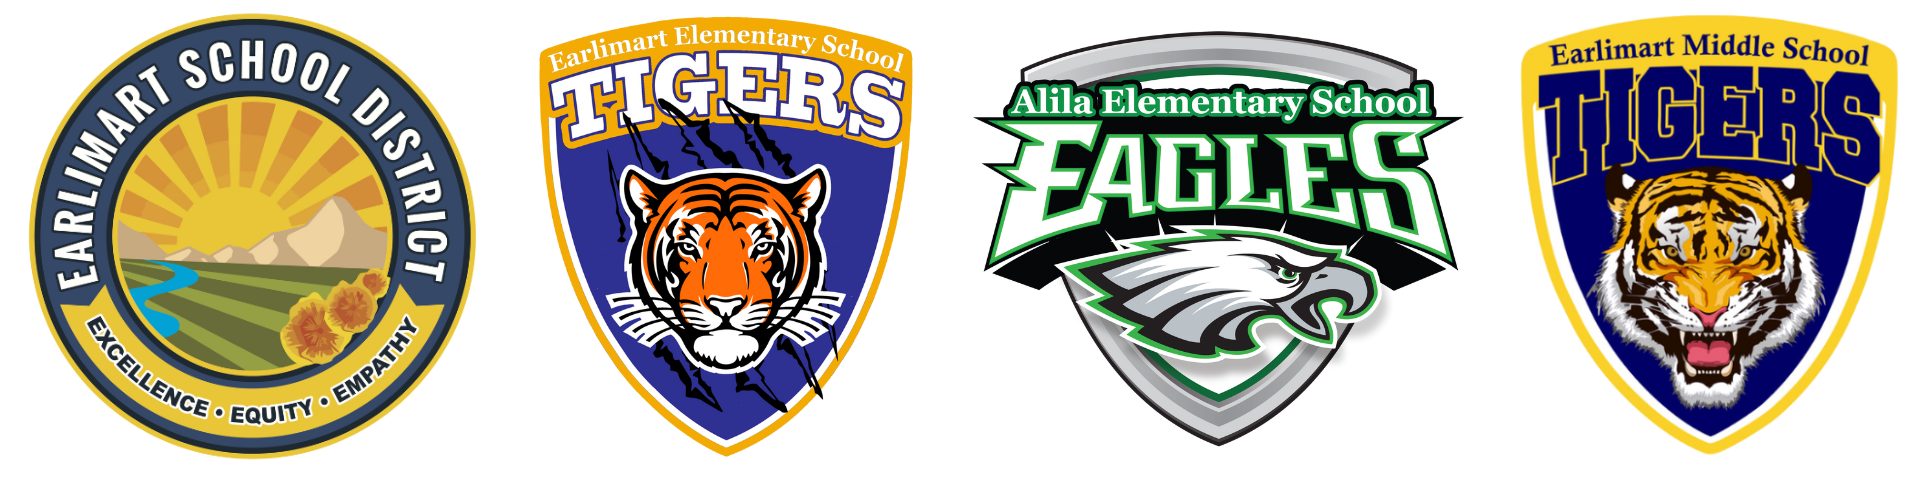 Earlimart School District logo, Earlimart Elementary School logo, Alila Elementary School logo, Earlimart Middle School logo